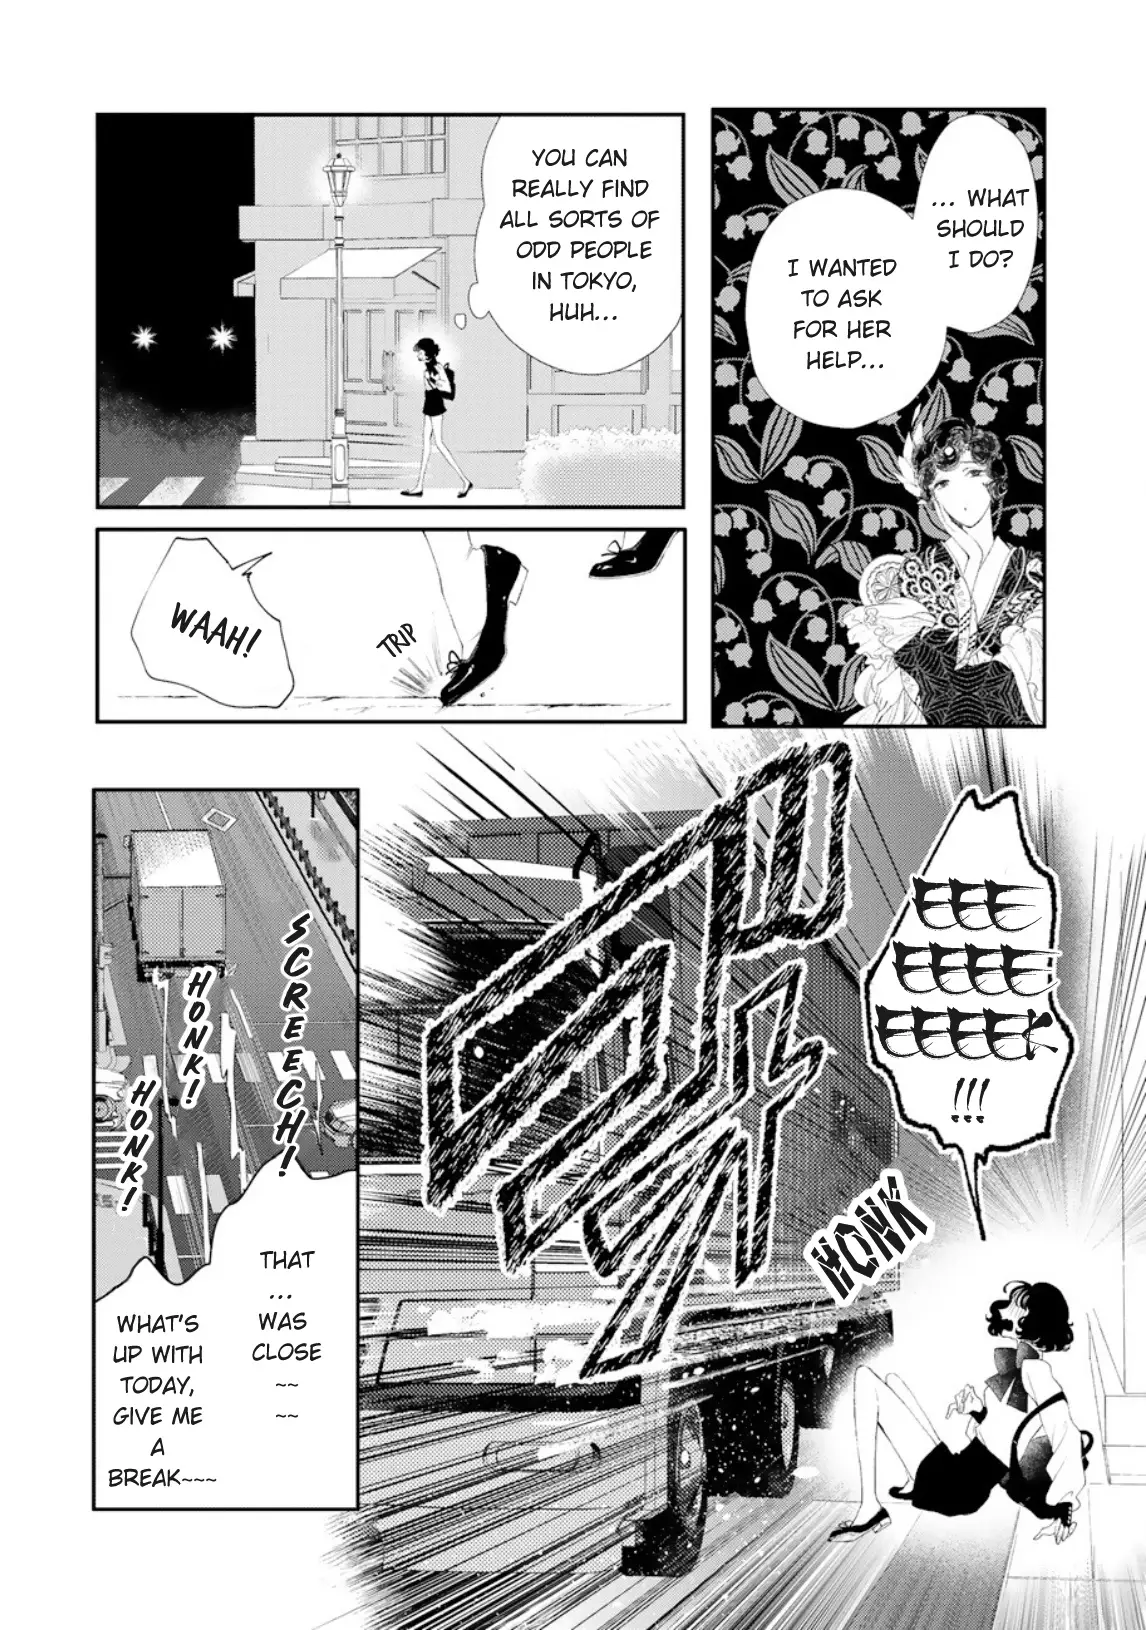 Yoiko No Shouzou - 1 page 12-680c3904